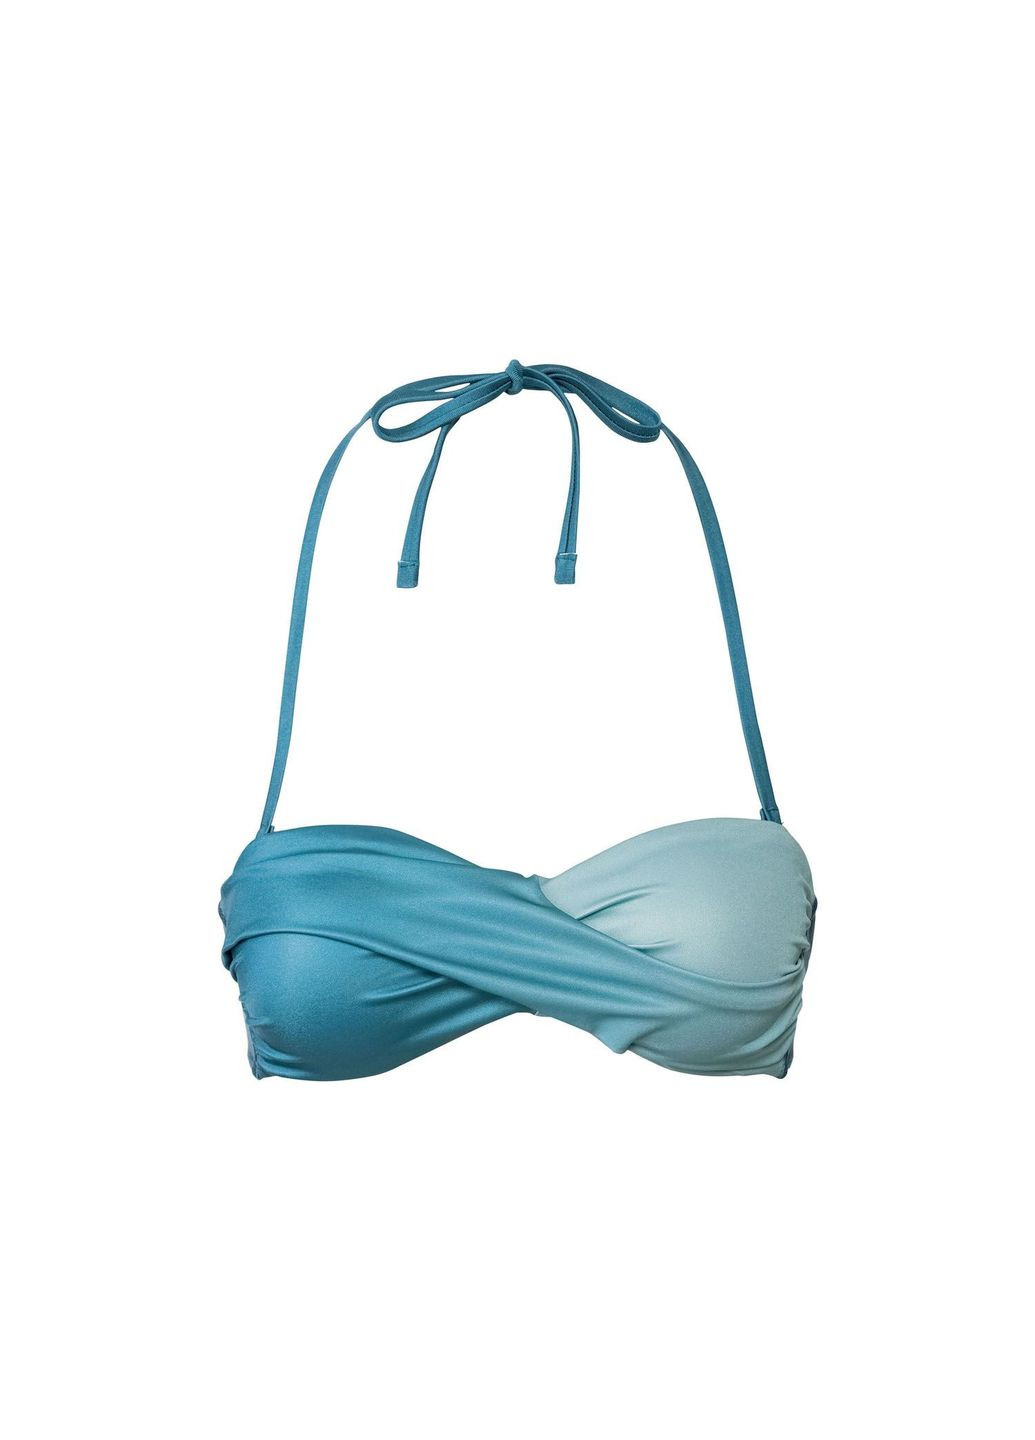 Бірюзовий купальник роздільний на підкладці для жінки lycra® 348526 бірюза бікіні Esmara